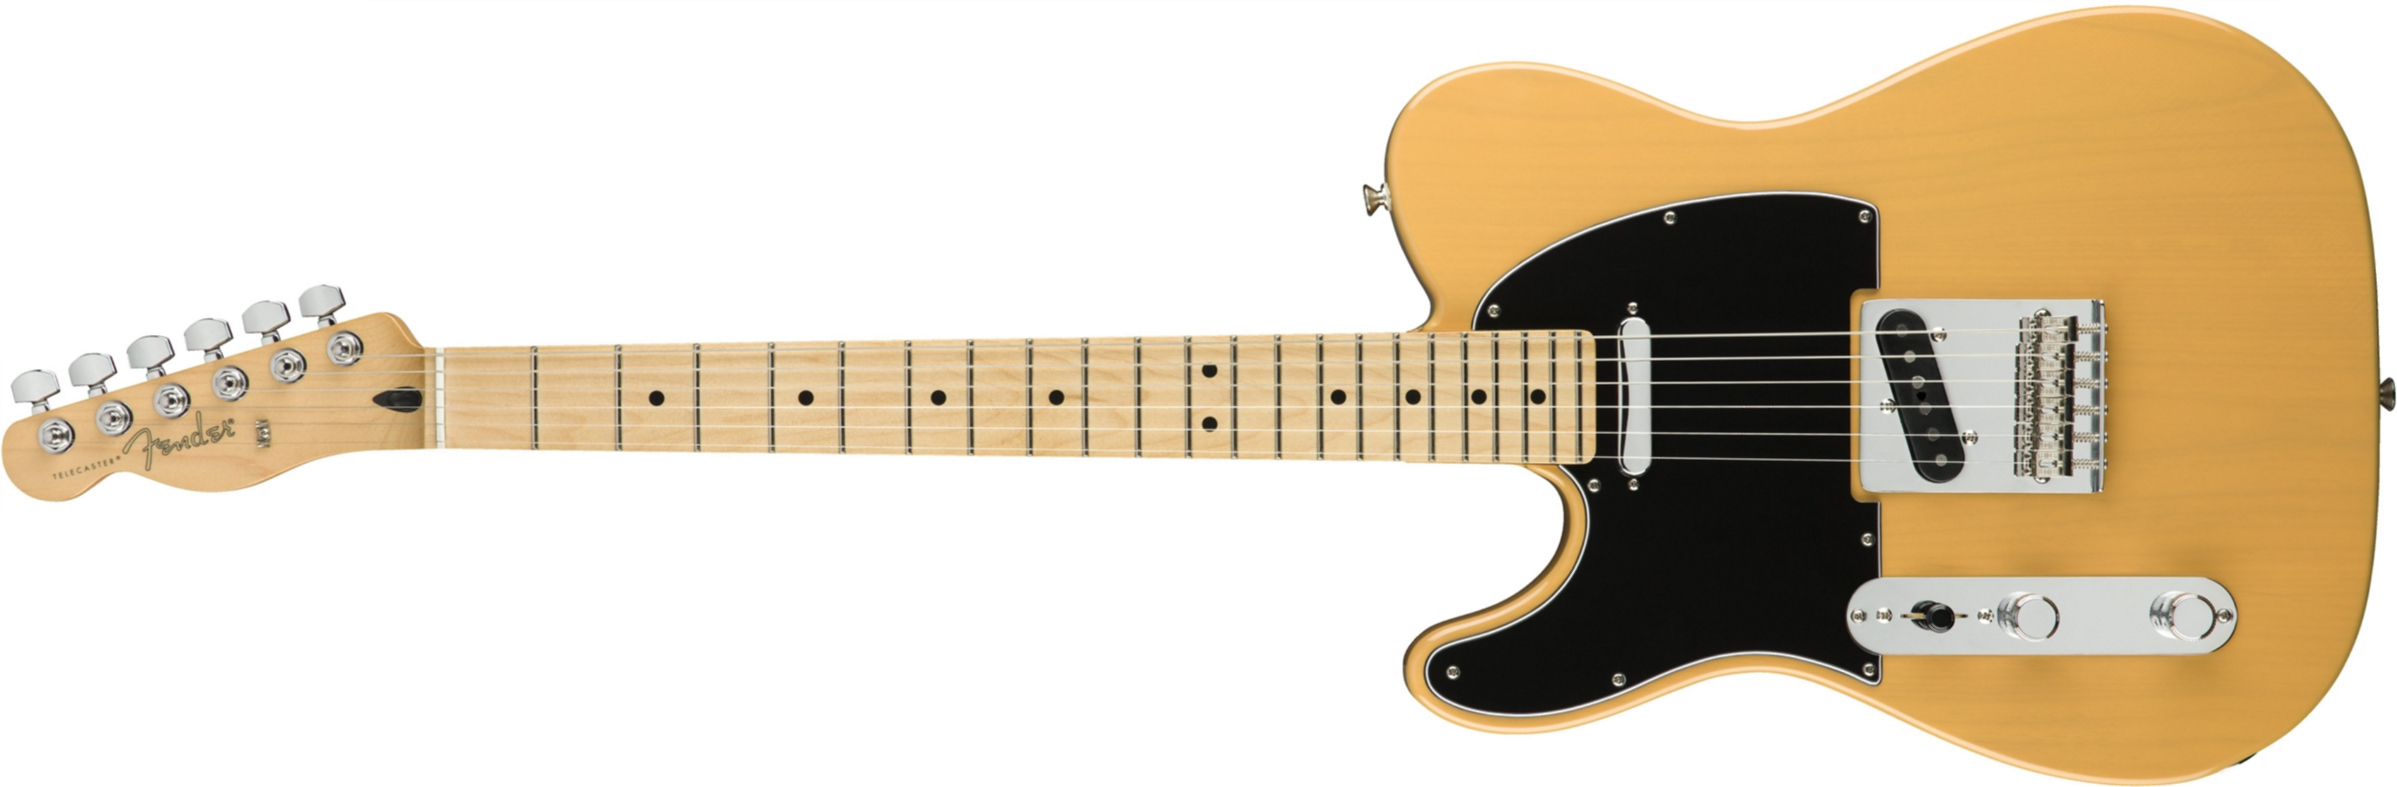 Fender Tele Player Lh Gaucher Mex 2s Mn - Butterscotch Blonde - E-Gitarre für Linkshänder - Main picture